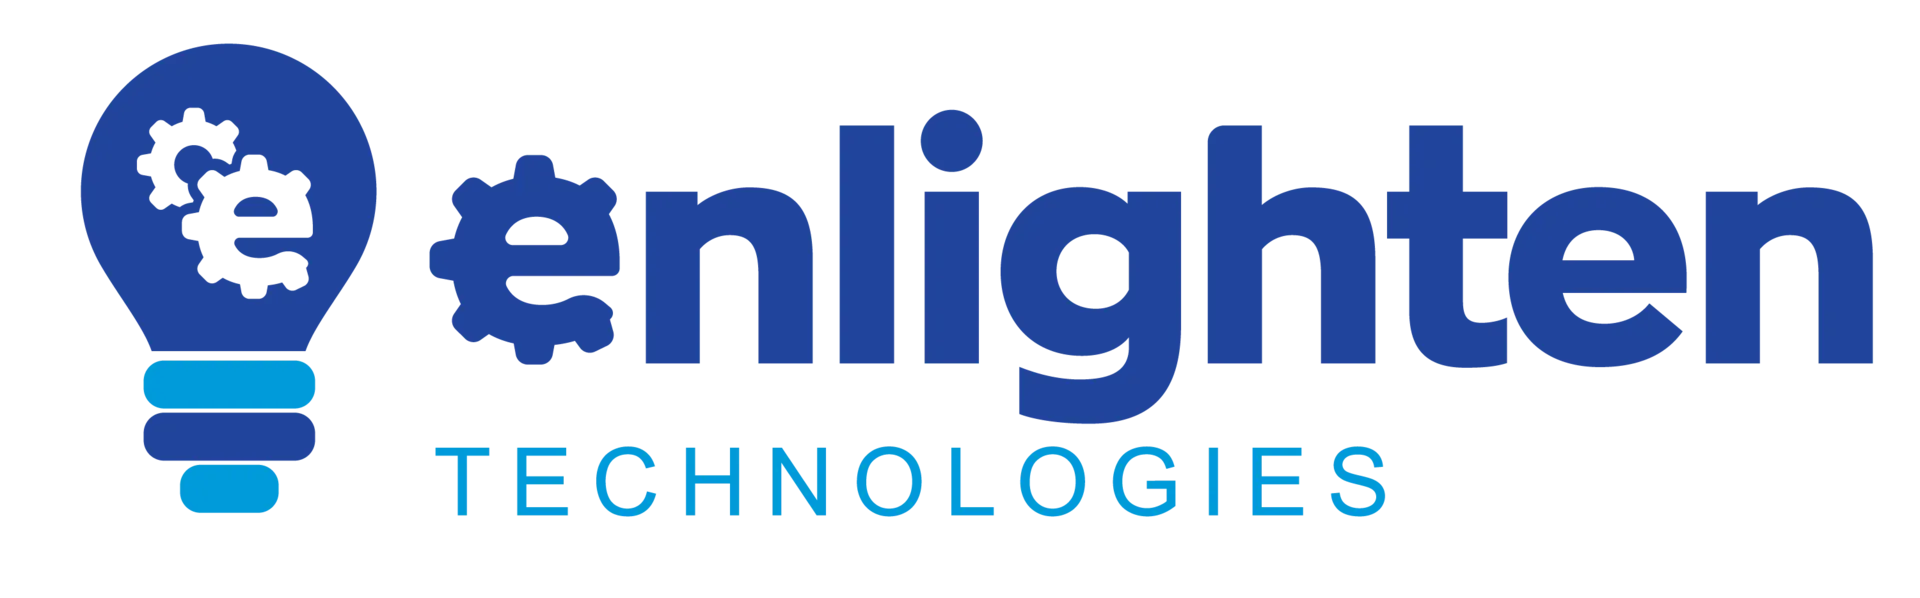 Enlighten Technologies